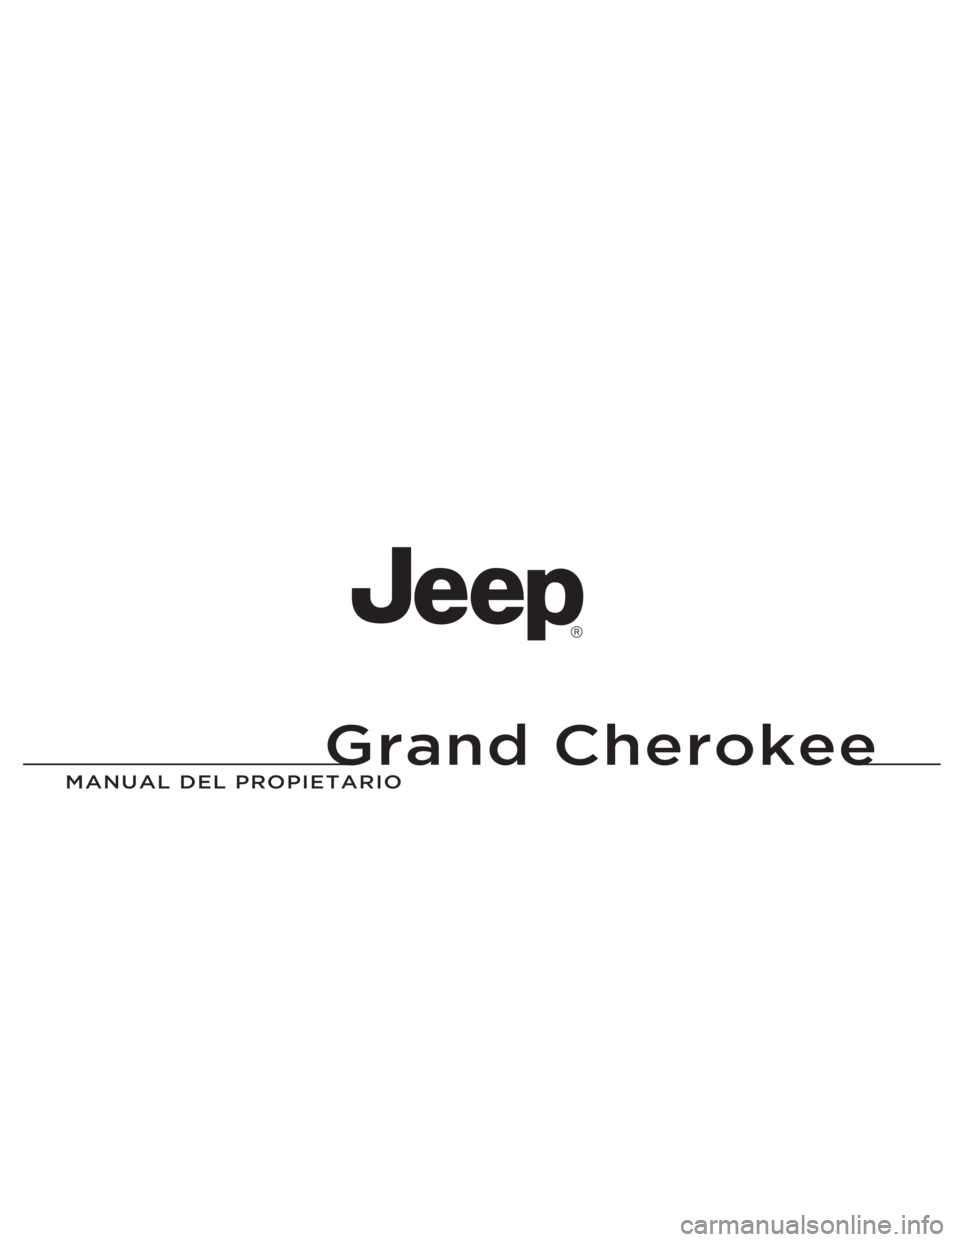 JEEP GRAND CHEROKEE 2014  Manual de Empleo y Cuidado (in Spanish) Grand Cherokee
MANUAL DEL P\fOPIETA\fIO\P
Grand Cherokee
14WK741-126-SPA-AAImpreso en Europa 14 